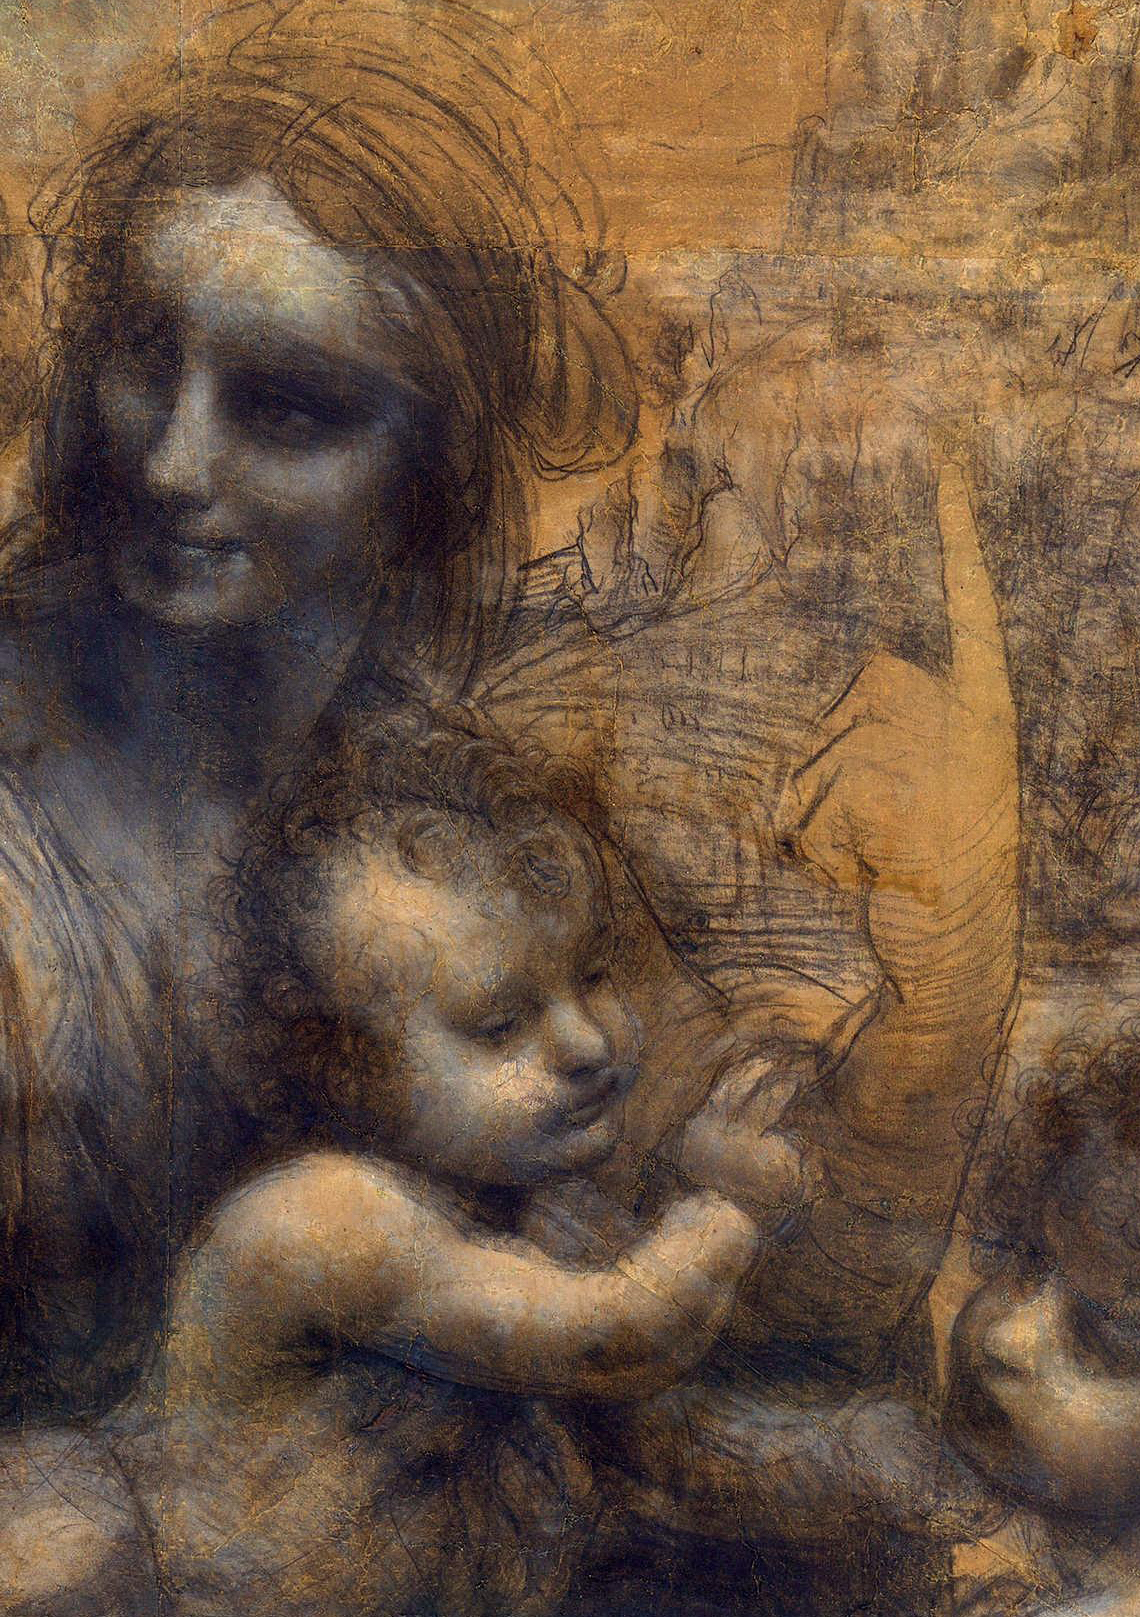 达·芬奇最后一幅画作《施洗者圣约翰》:造物主之谜